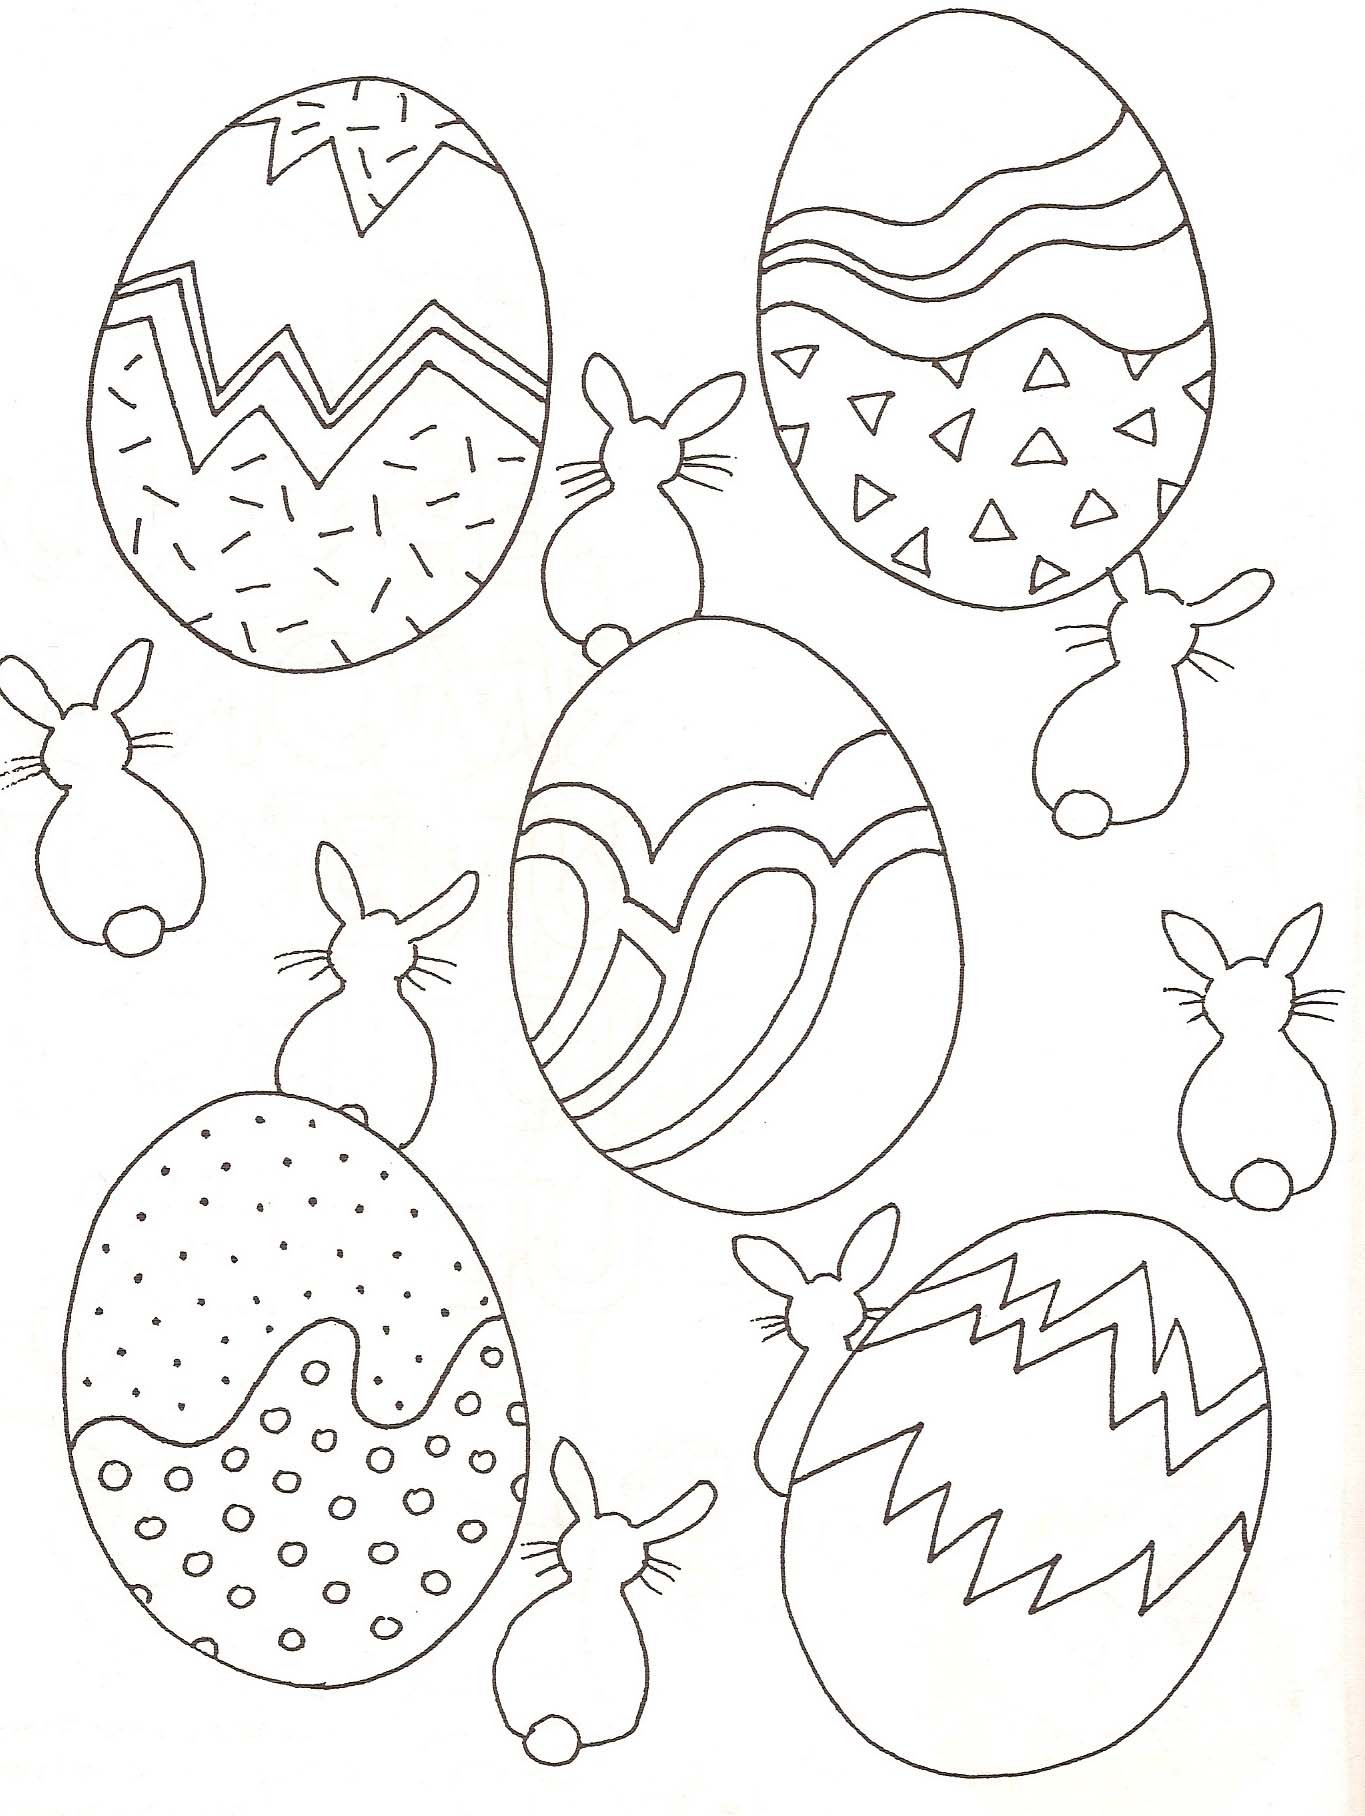 Outro belo desenho de ovos de Páscoa